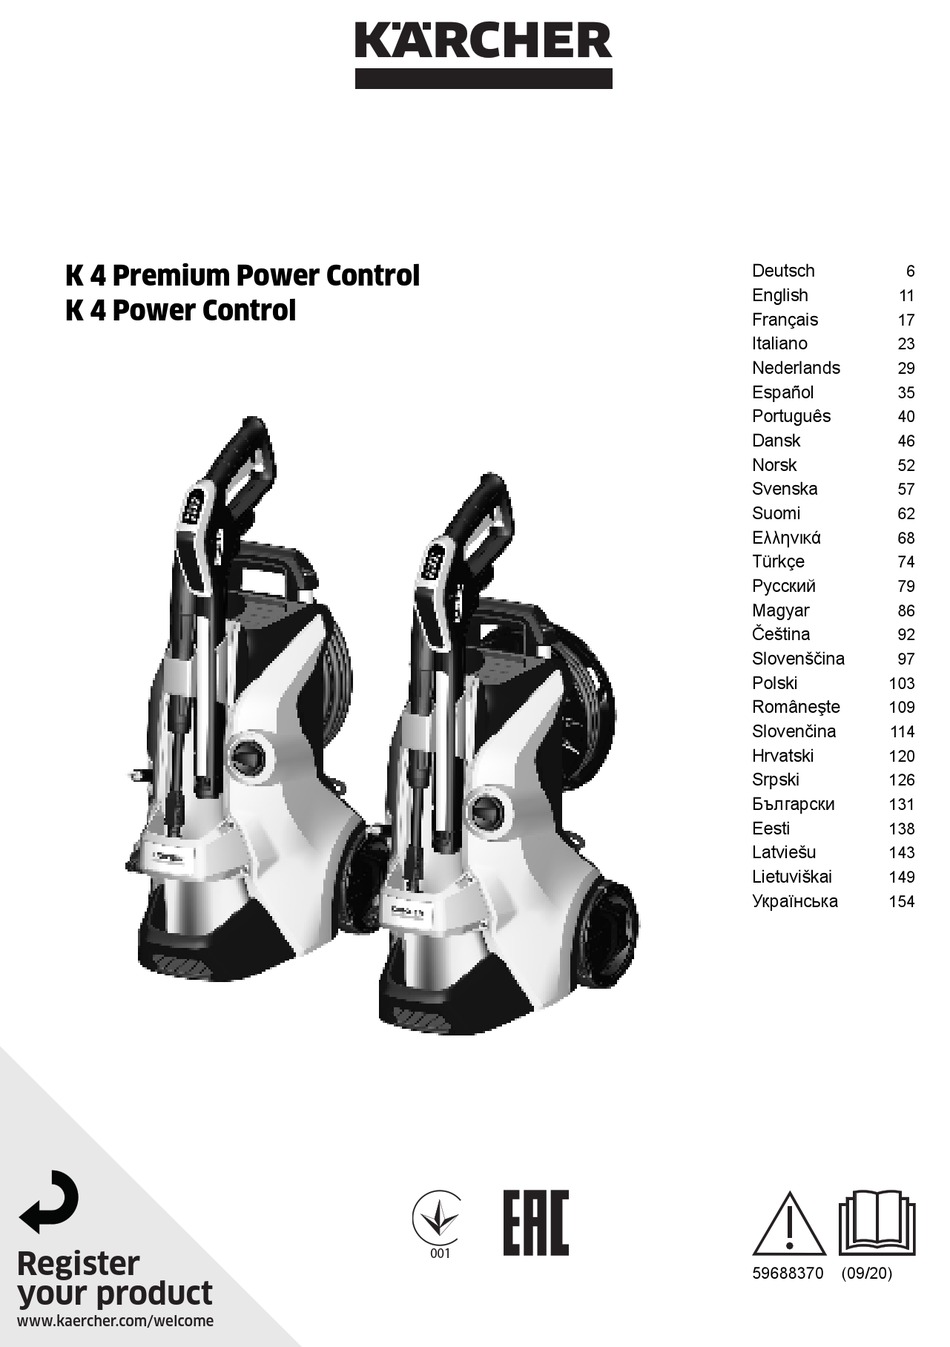 K 5 power control. Давления k 4 Premium Power Control. Karcher k 4 Power Control. Power Control k4 аппарат высокого давления. Karcher k 4 Power Control обзор.